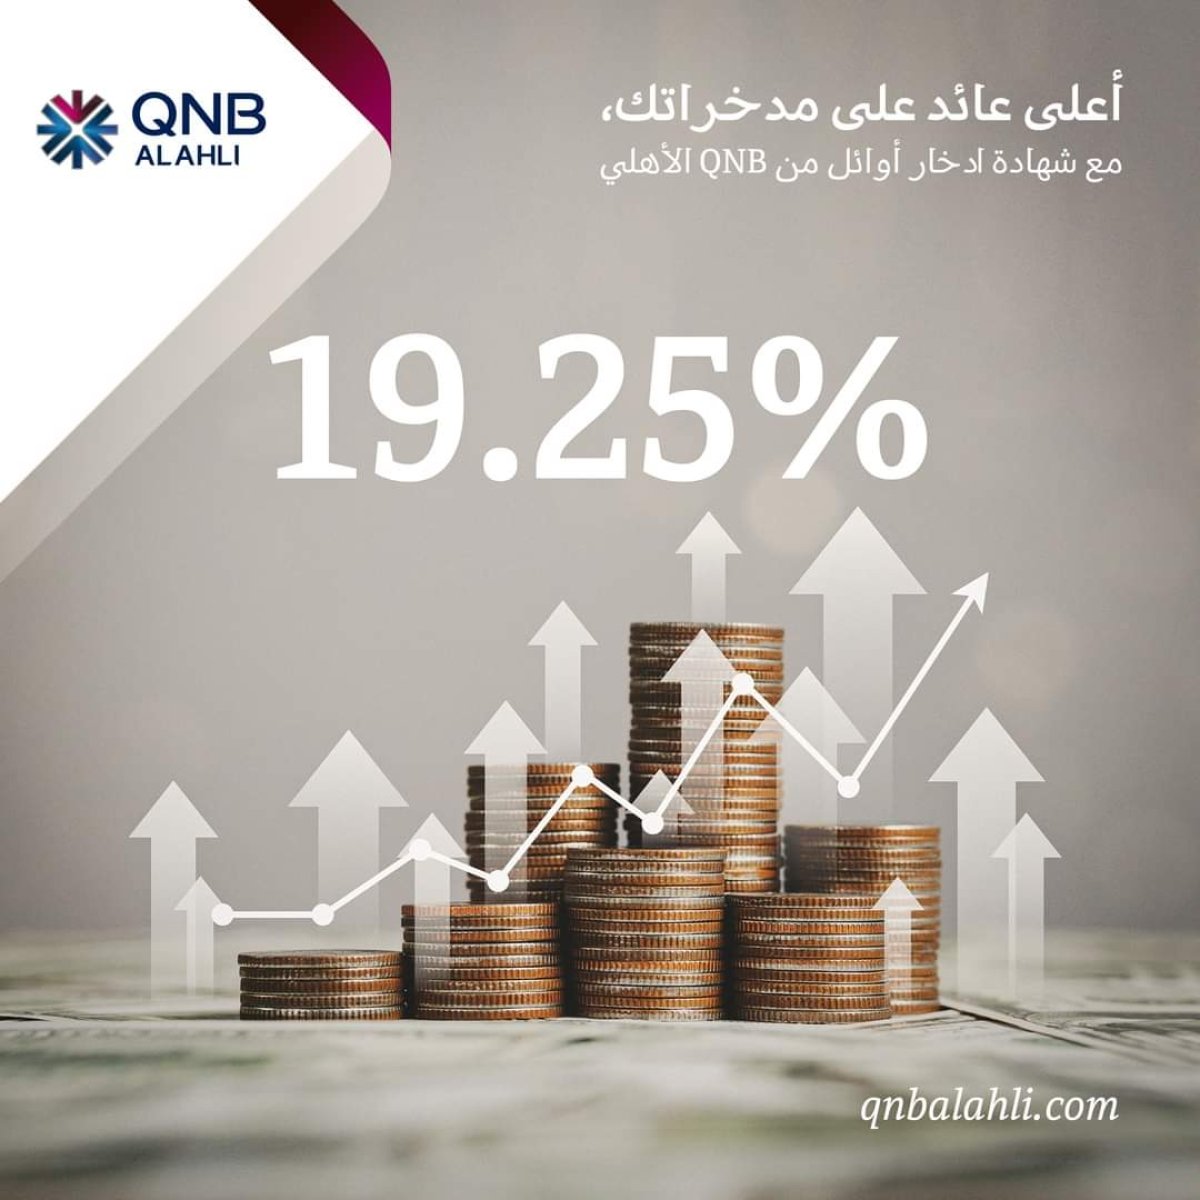 بنك QNB يصدر شهادة "أوائل" الجديدة بعائد يصل إلى 19.25%